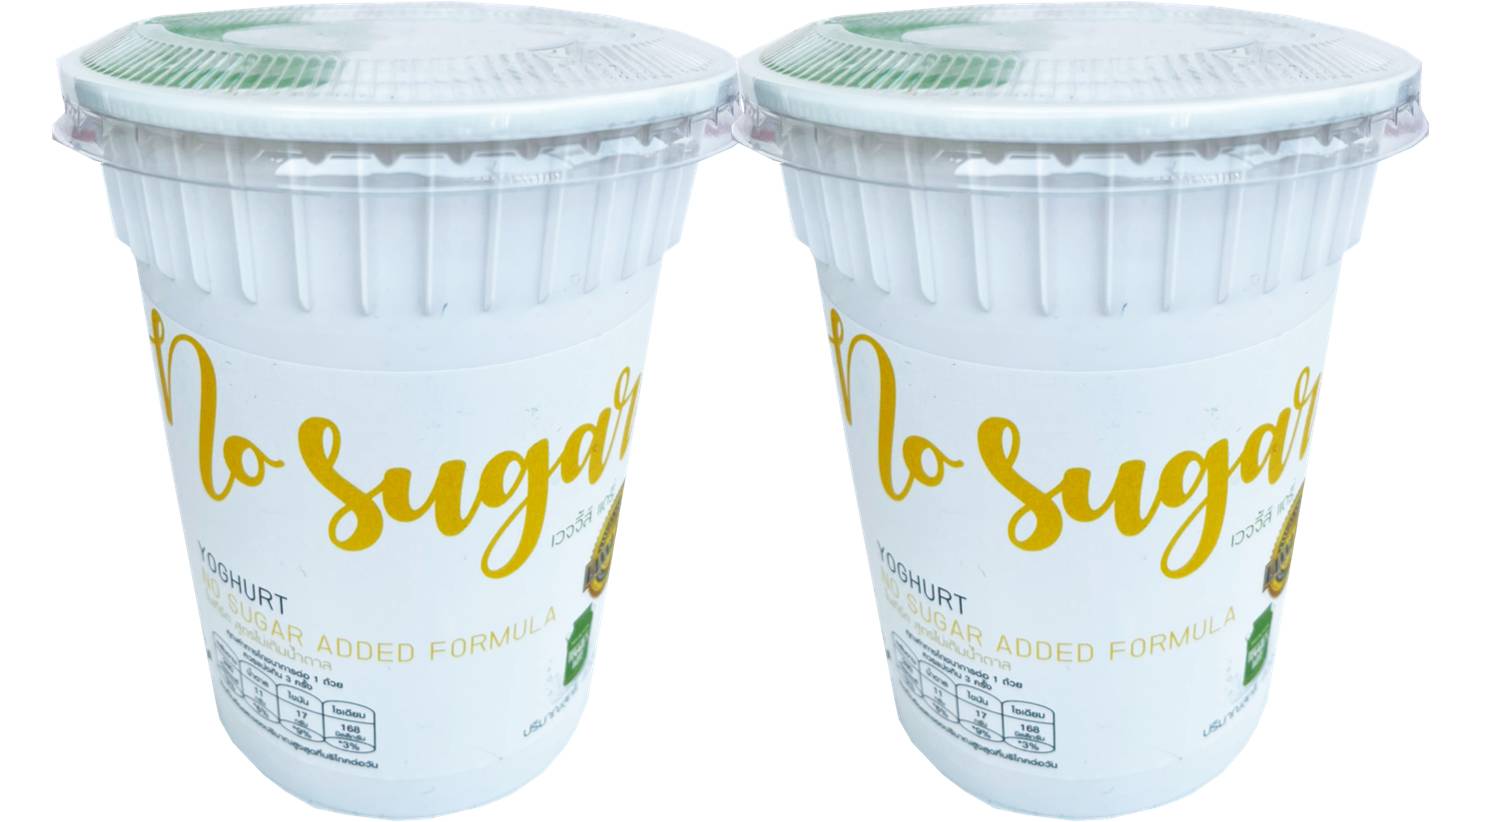 โยเกิร์ตโฮมเมด เวจจี้ส์แดรี่ 420กรัม แพค2 ไม่มีน้ำตาล Homemade Yoghurt Veggie’s Dairy No Sugar Added (420 g) 2 cups